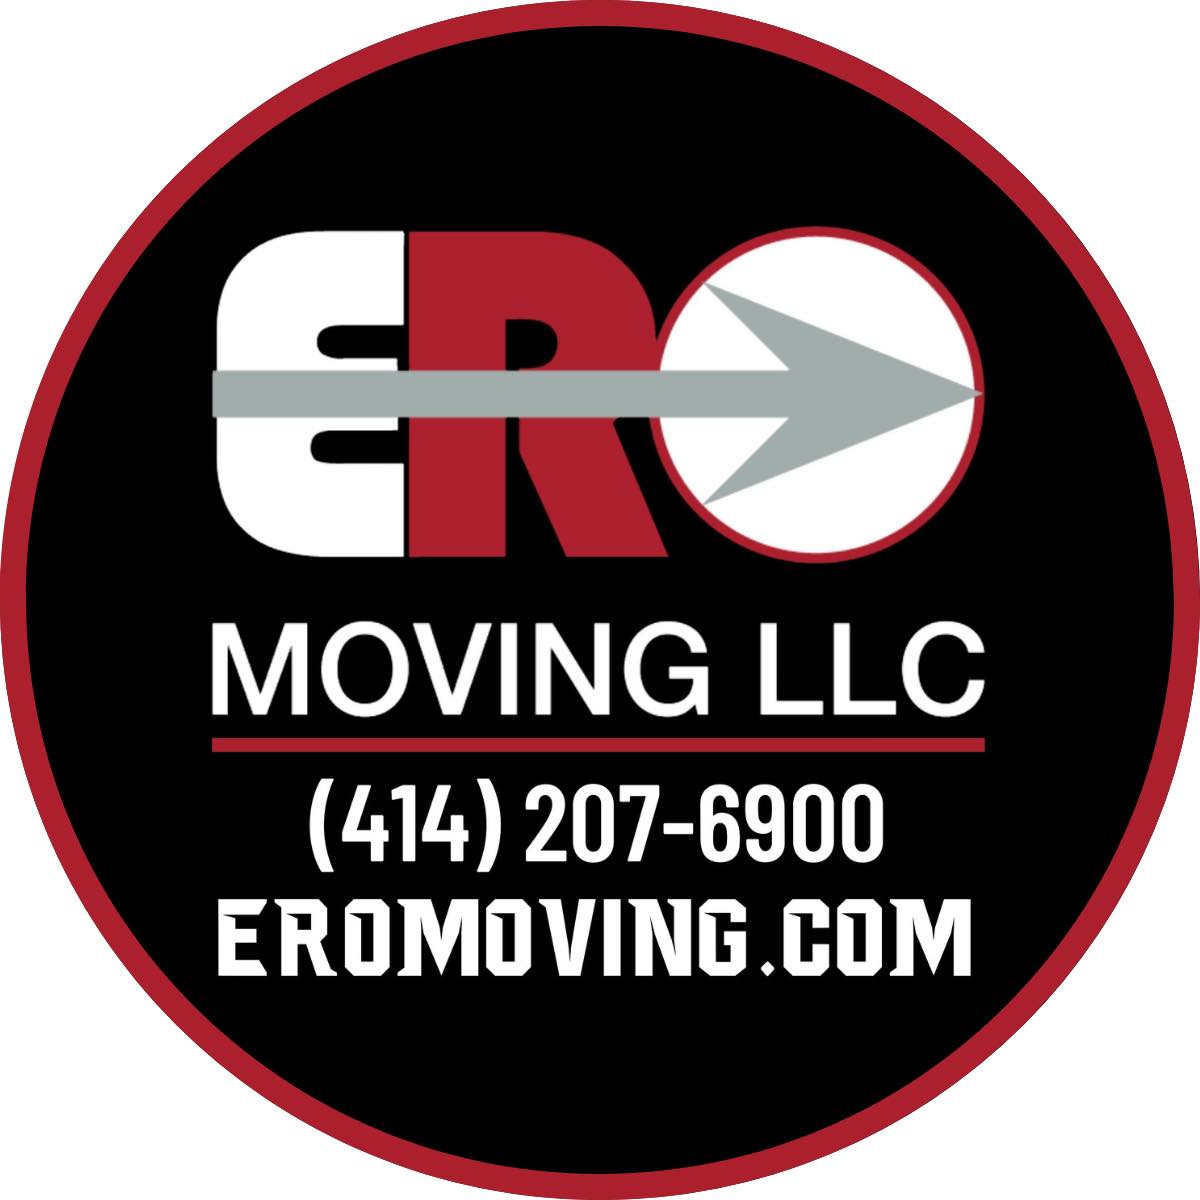 ERO Moving, LLC